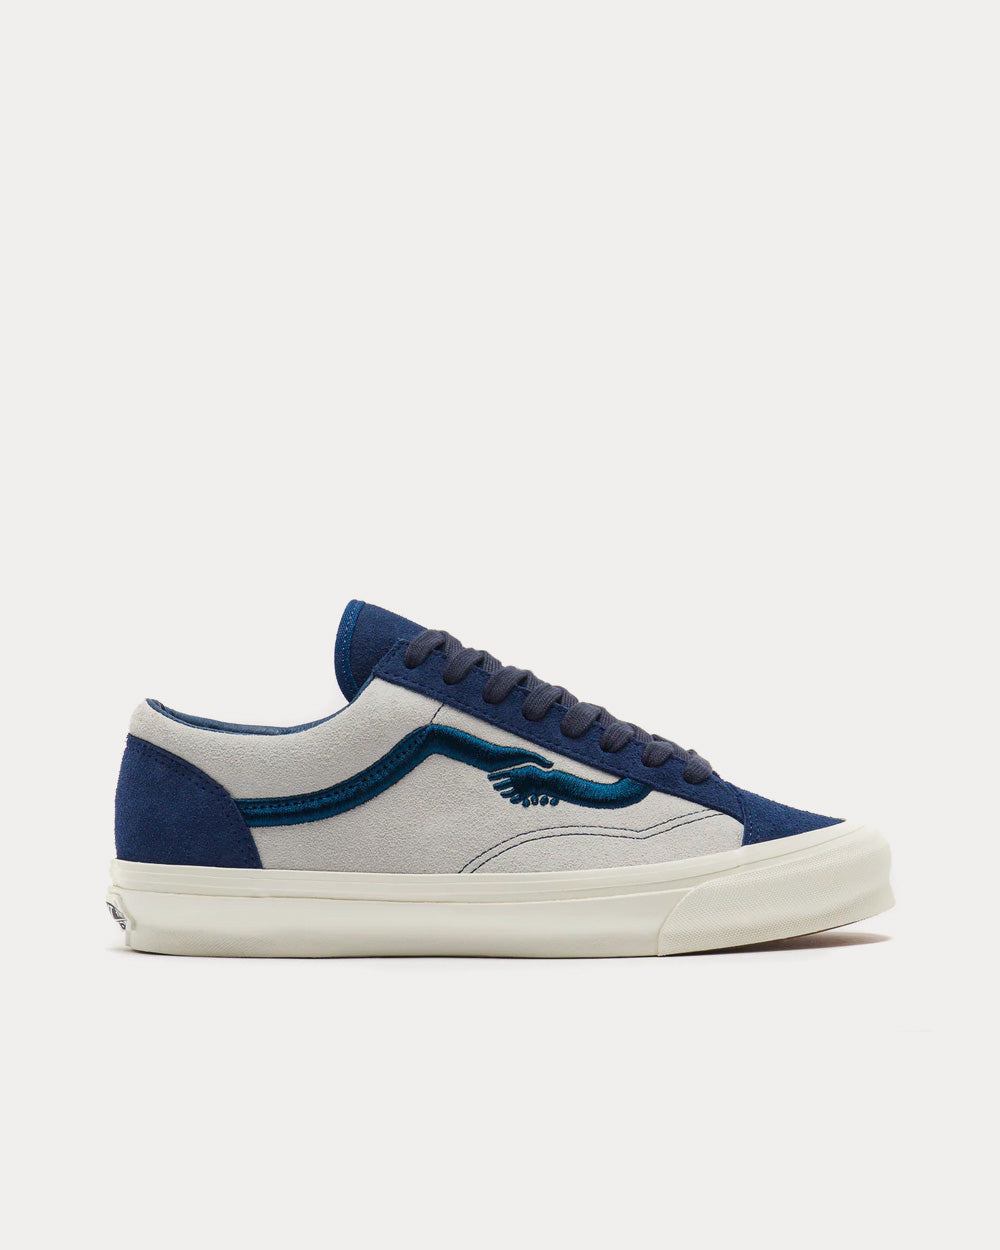 Vans x Dime Wayvee Evening Blue Low Top Sneakers - Sneak in Peace